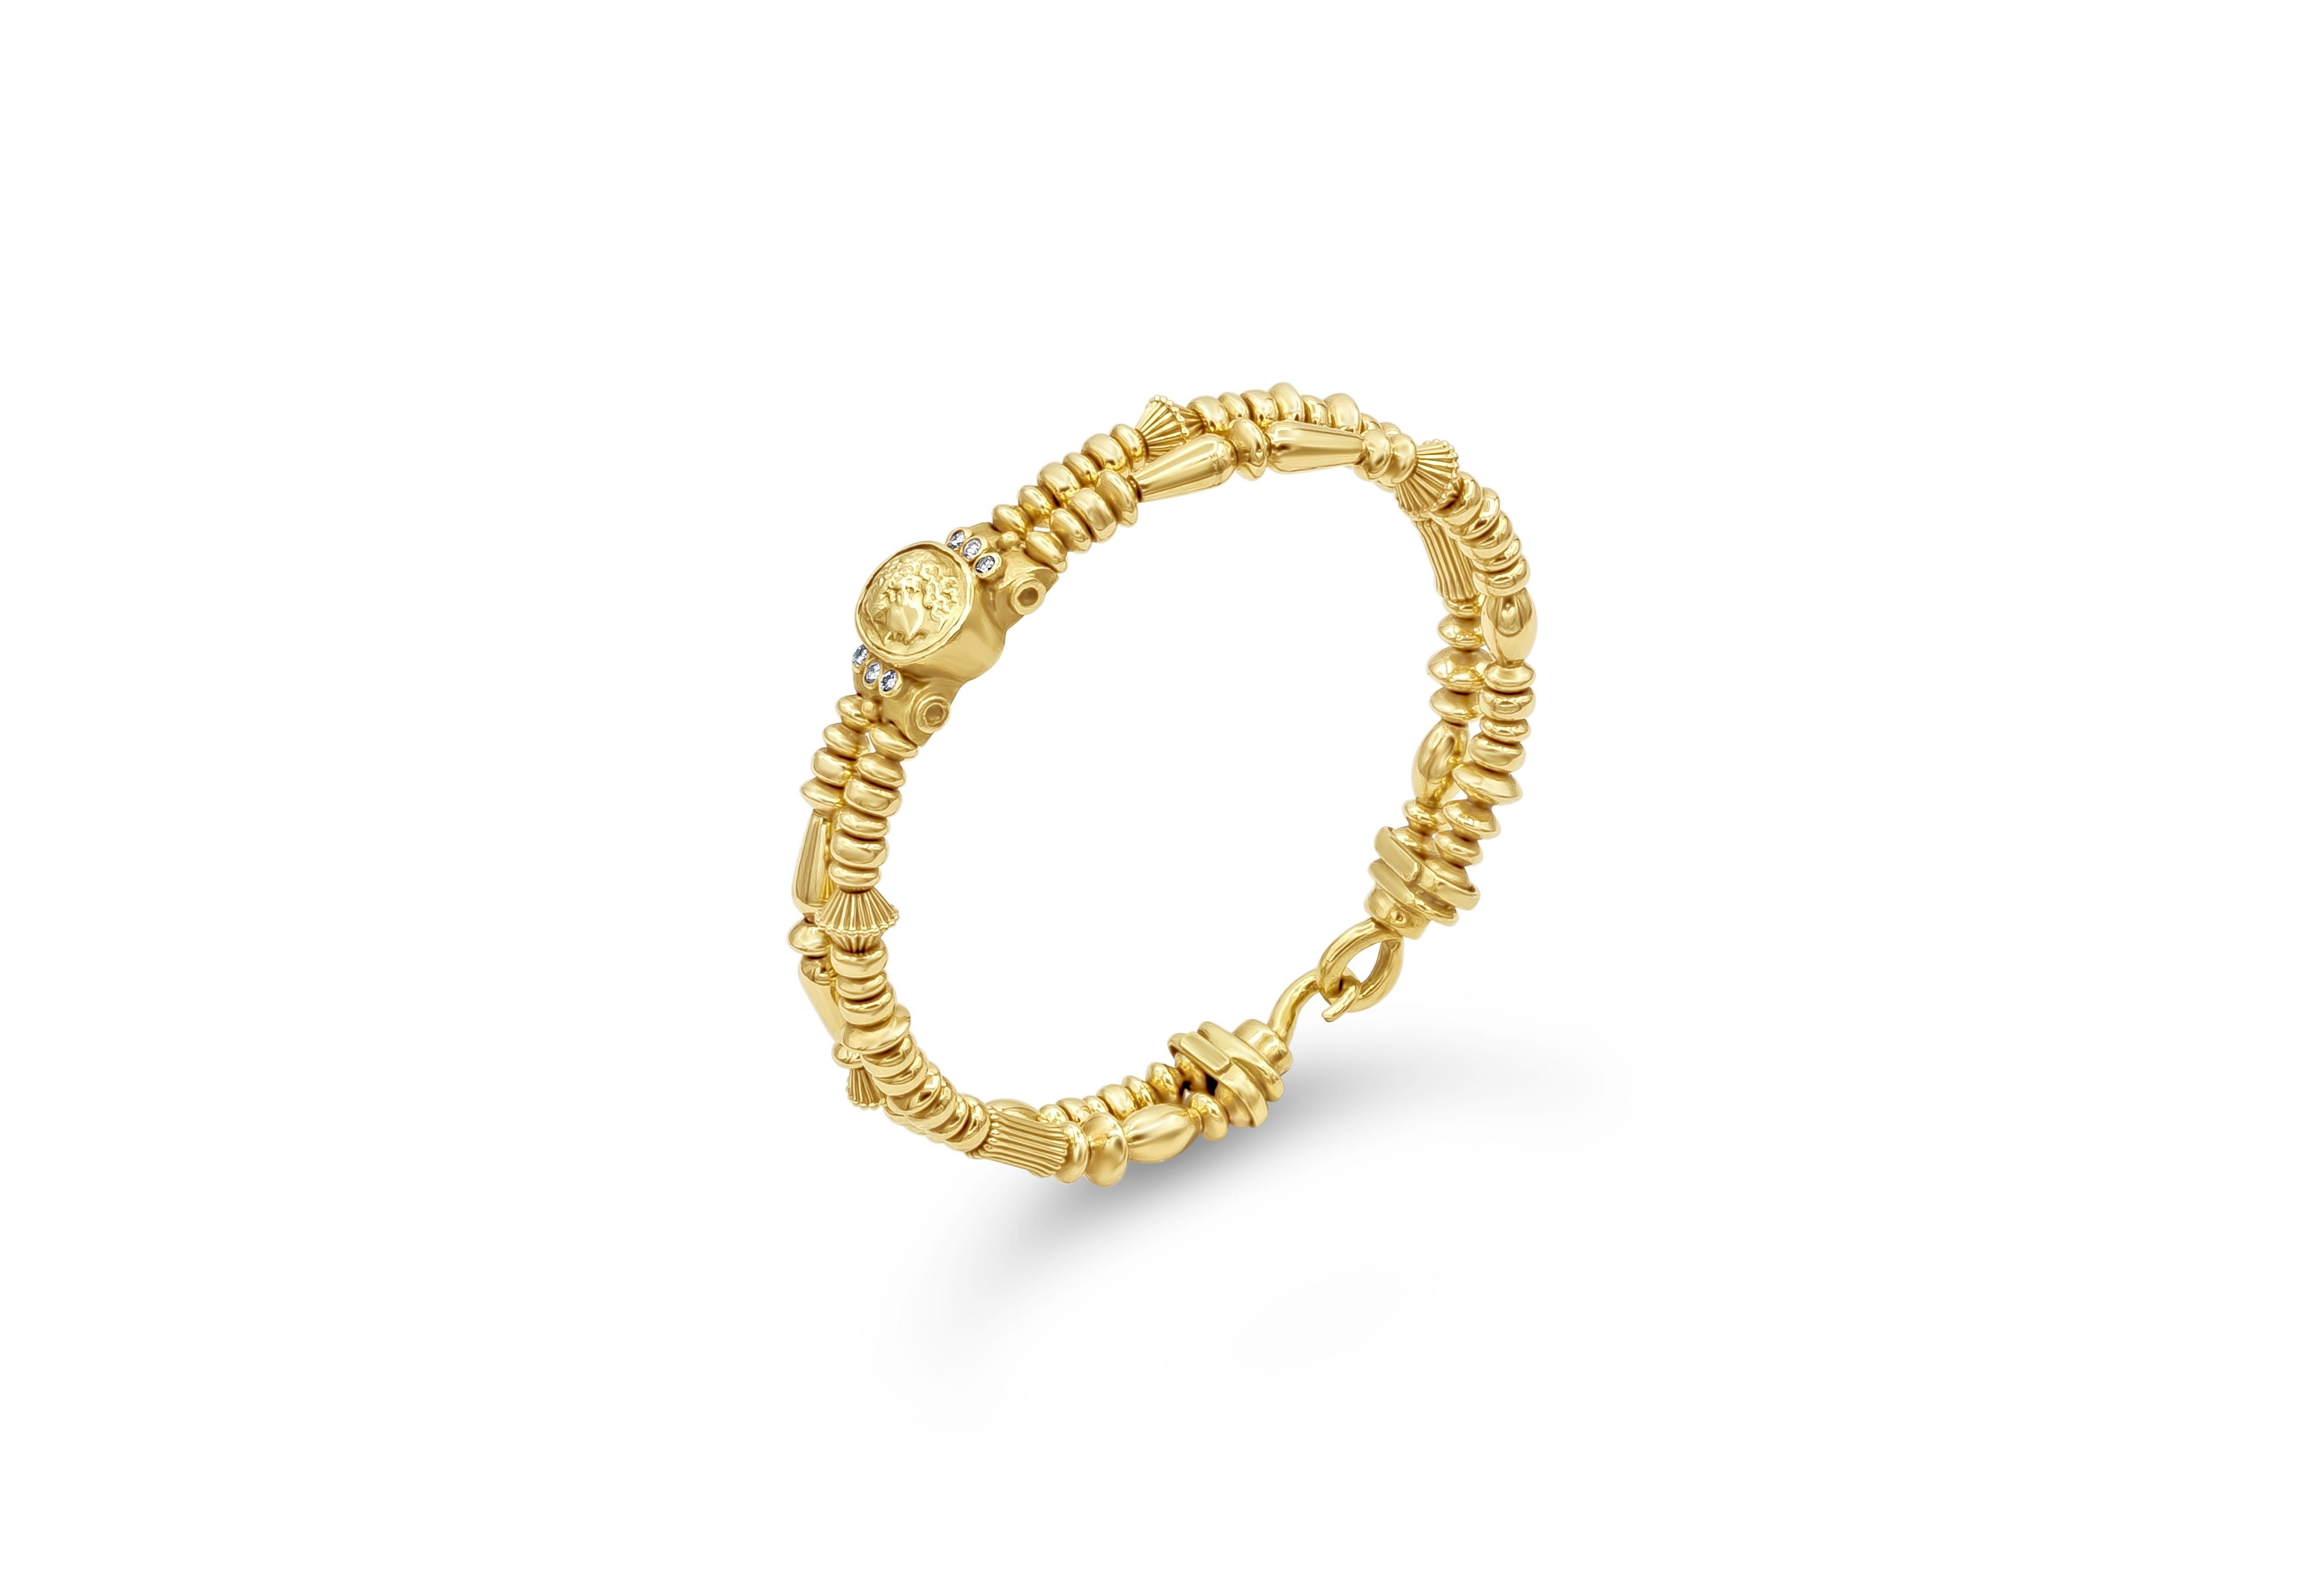 Ein einzigartiges und wunderschönes Armband mit dem Seitenprofil eines römischen Mannes aus 18 Karat Gelbgold, das auf beiden Seiten mit Diamanten verziert ist. Die Diamanten wiegen insgesamt 0,12 Karat. Zweireihiges Design aus 18K Gelbgold.